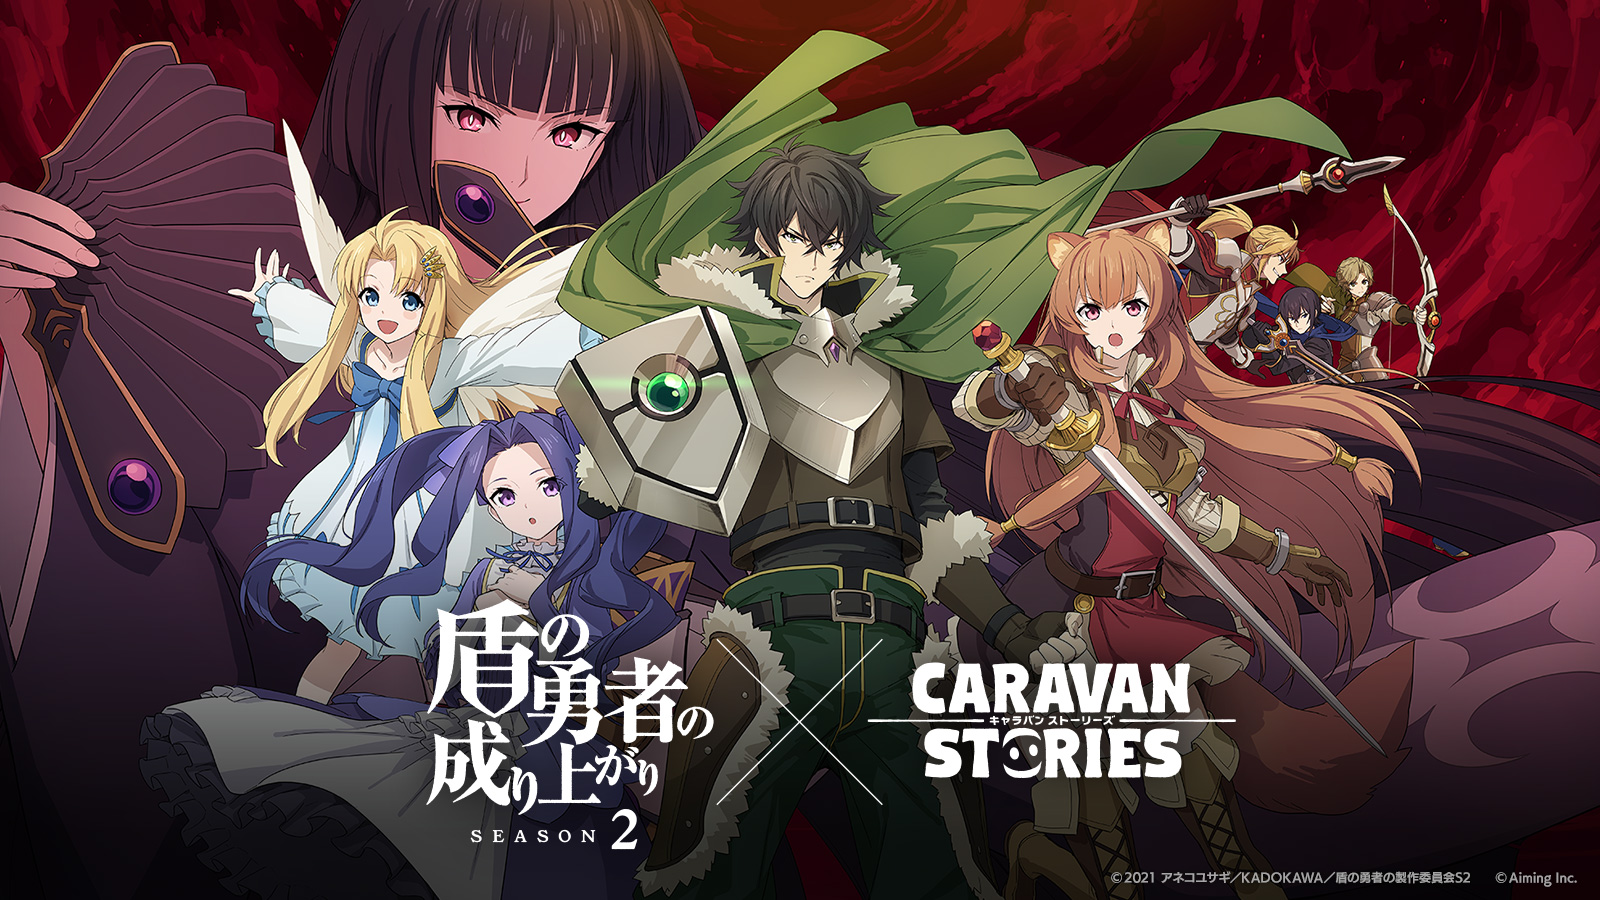 画像集no 001 Caravan Stories Tvアニメ 盾の勇者の成り上がり Season2 との